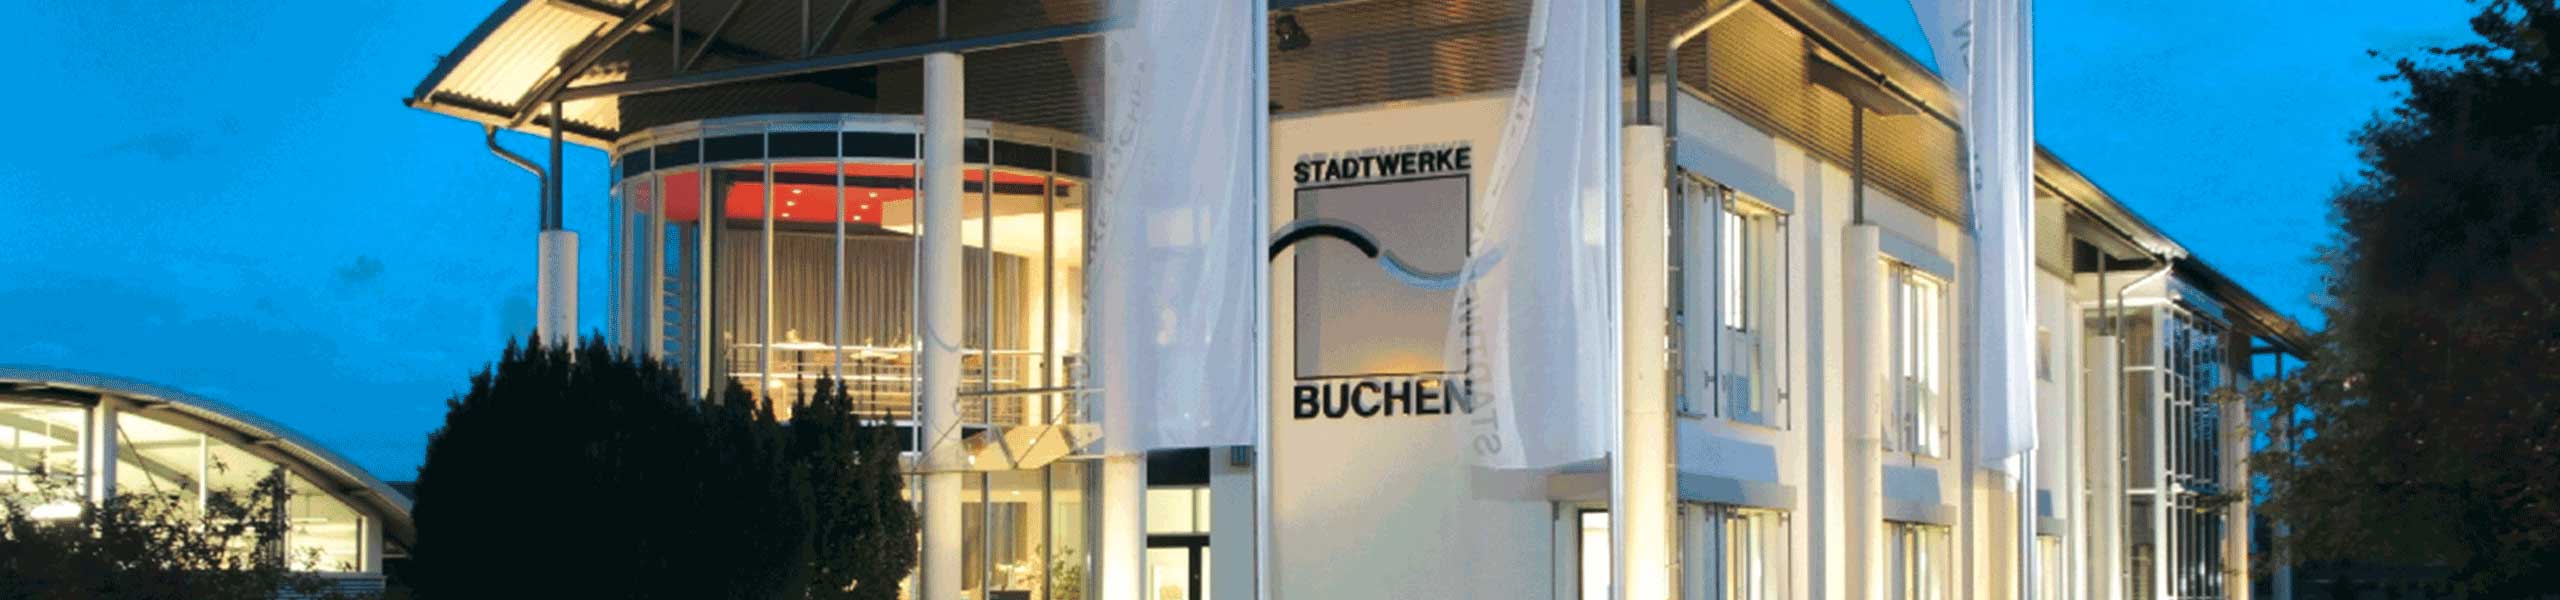 Stadtwerke Buchen GmbH & Co KG - Ihr Versorger vor Ort - Heizen mit Strom: Droht durch Direktheizungen eine Überlastung des Stromnetzes? 